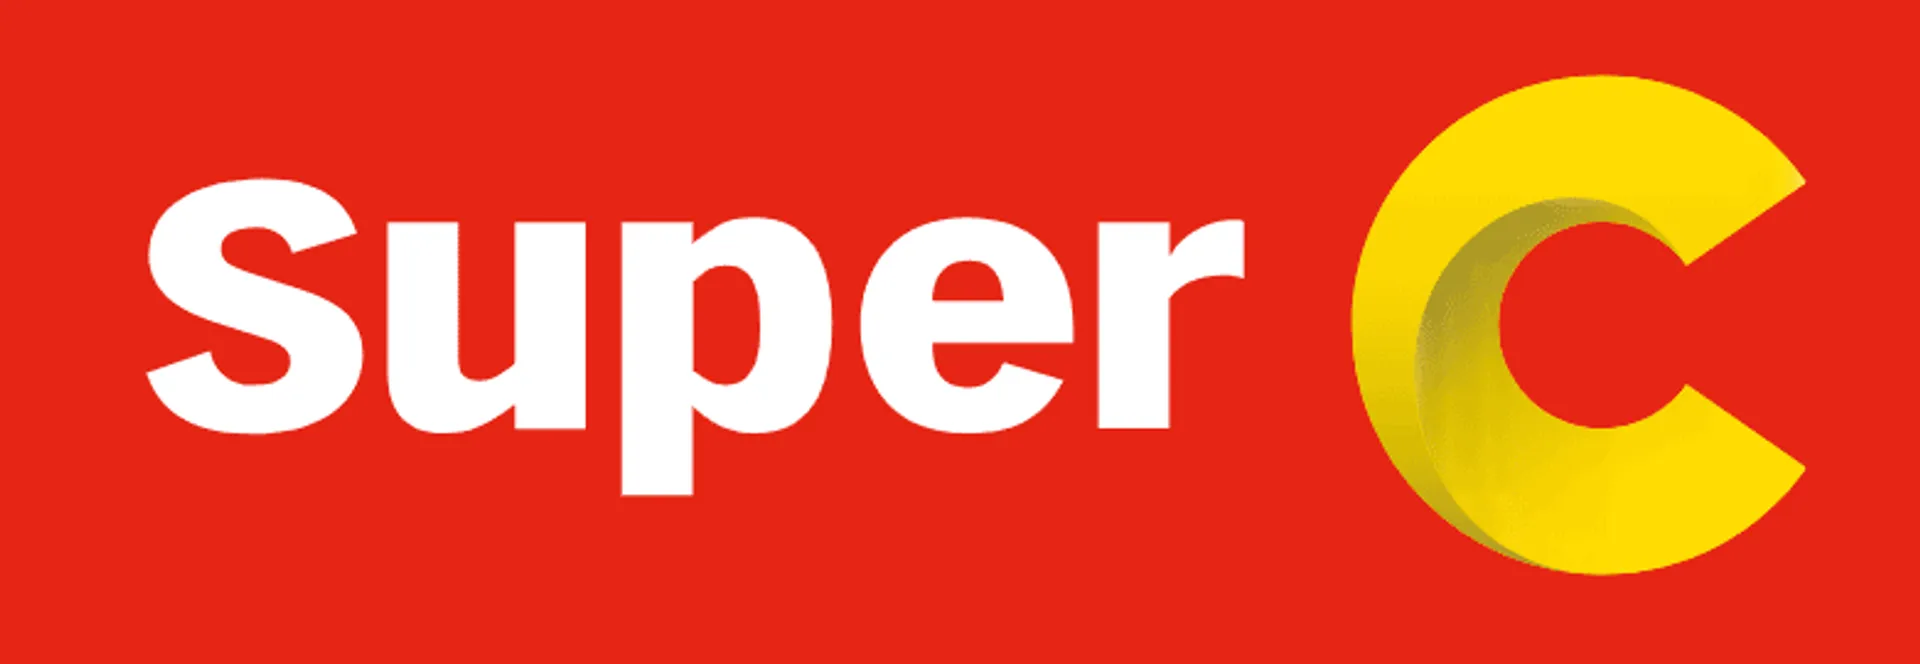 SUPER C logo